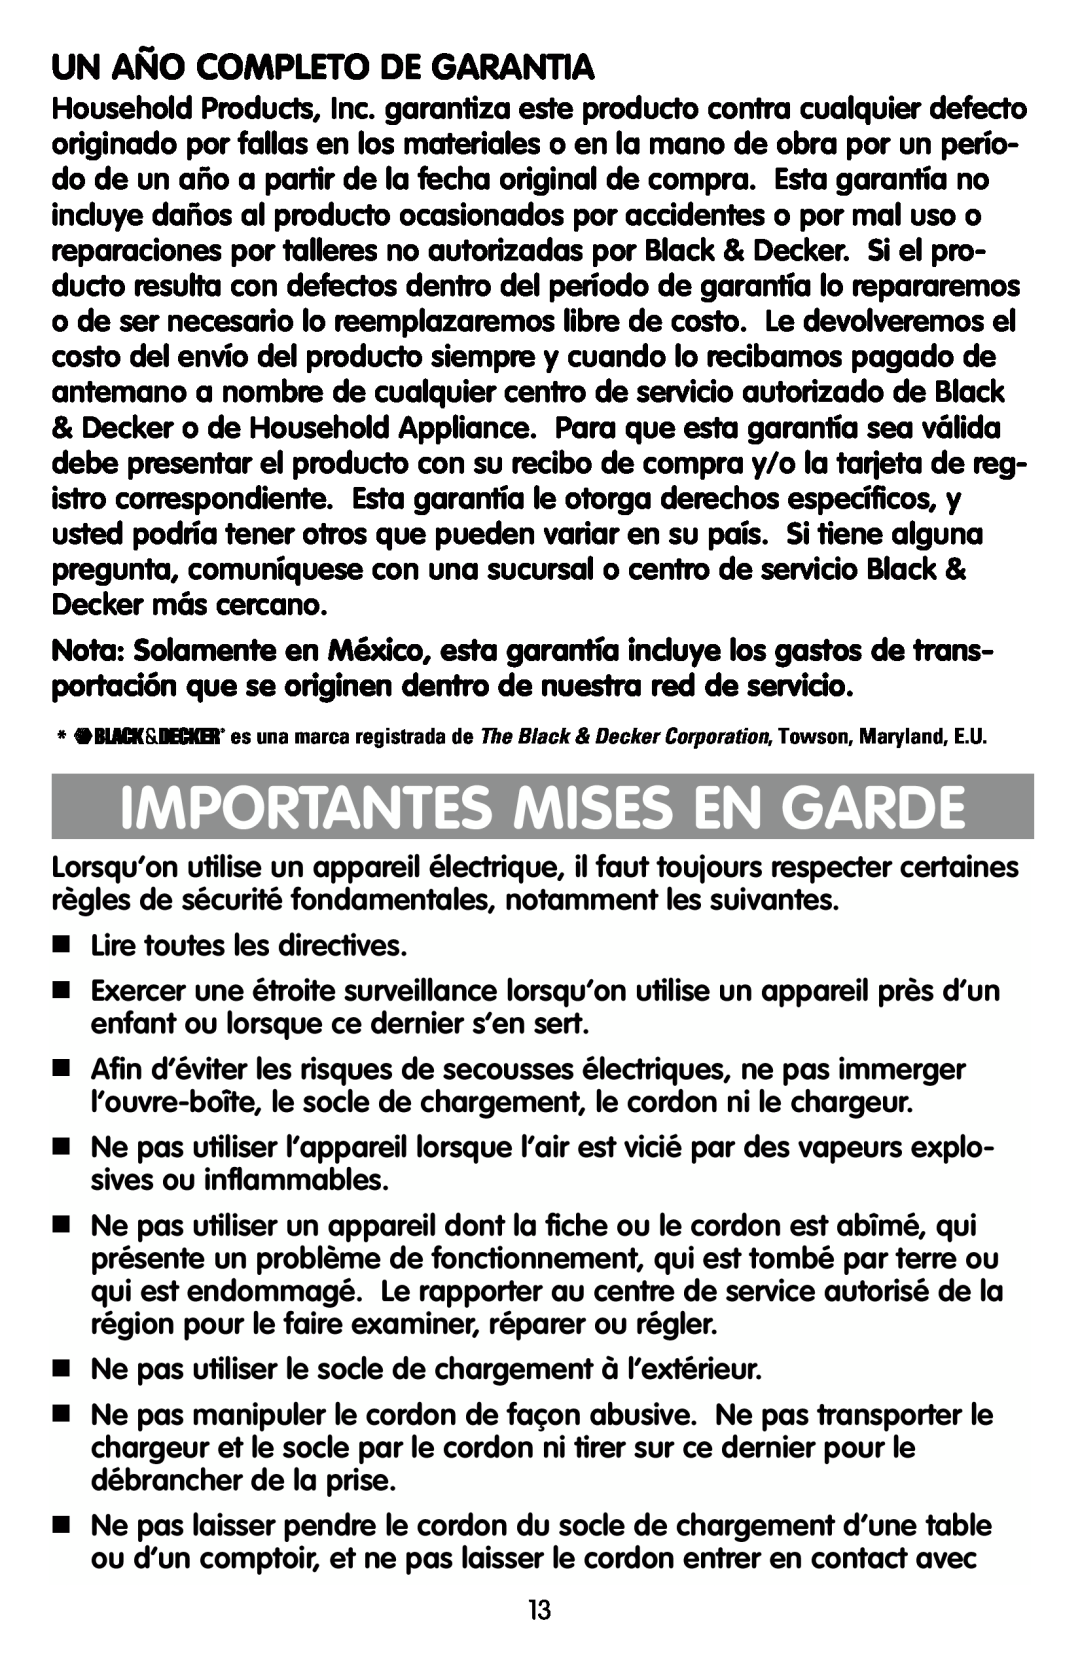 Black & Decker KEC500 manual Importantes Mises En Garde, Un Año Completo De Garantia 